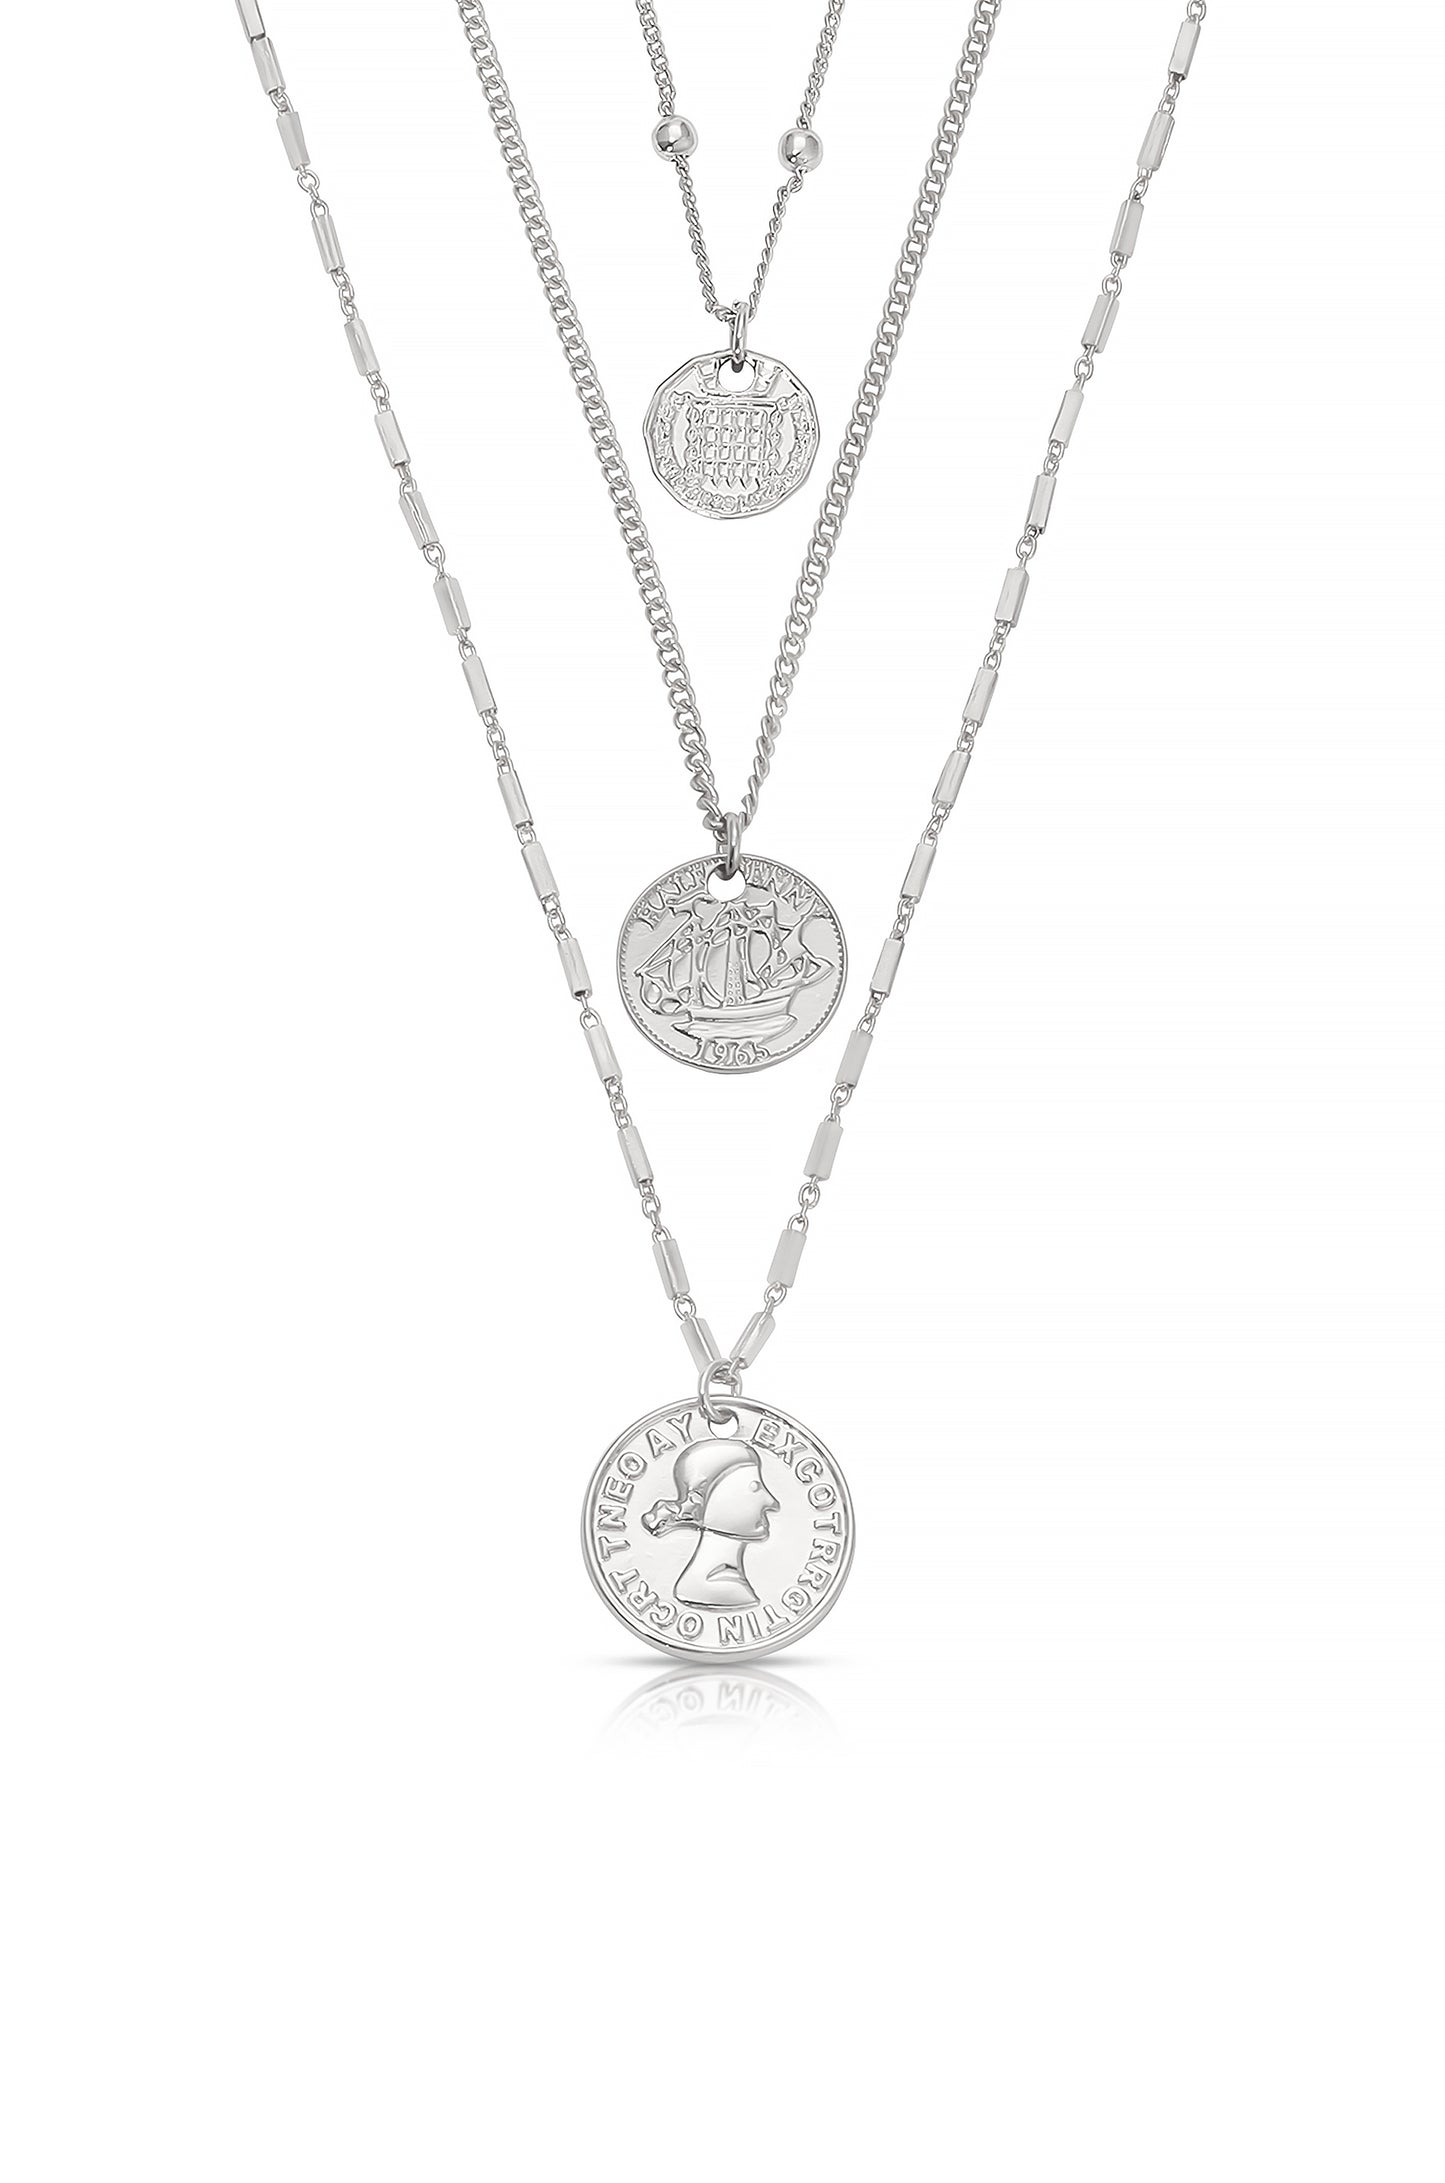 Three Coins Necklace Set in rhodium